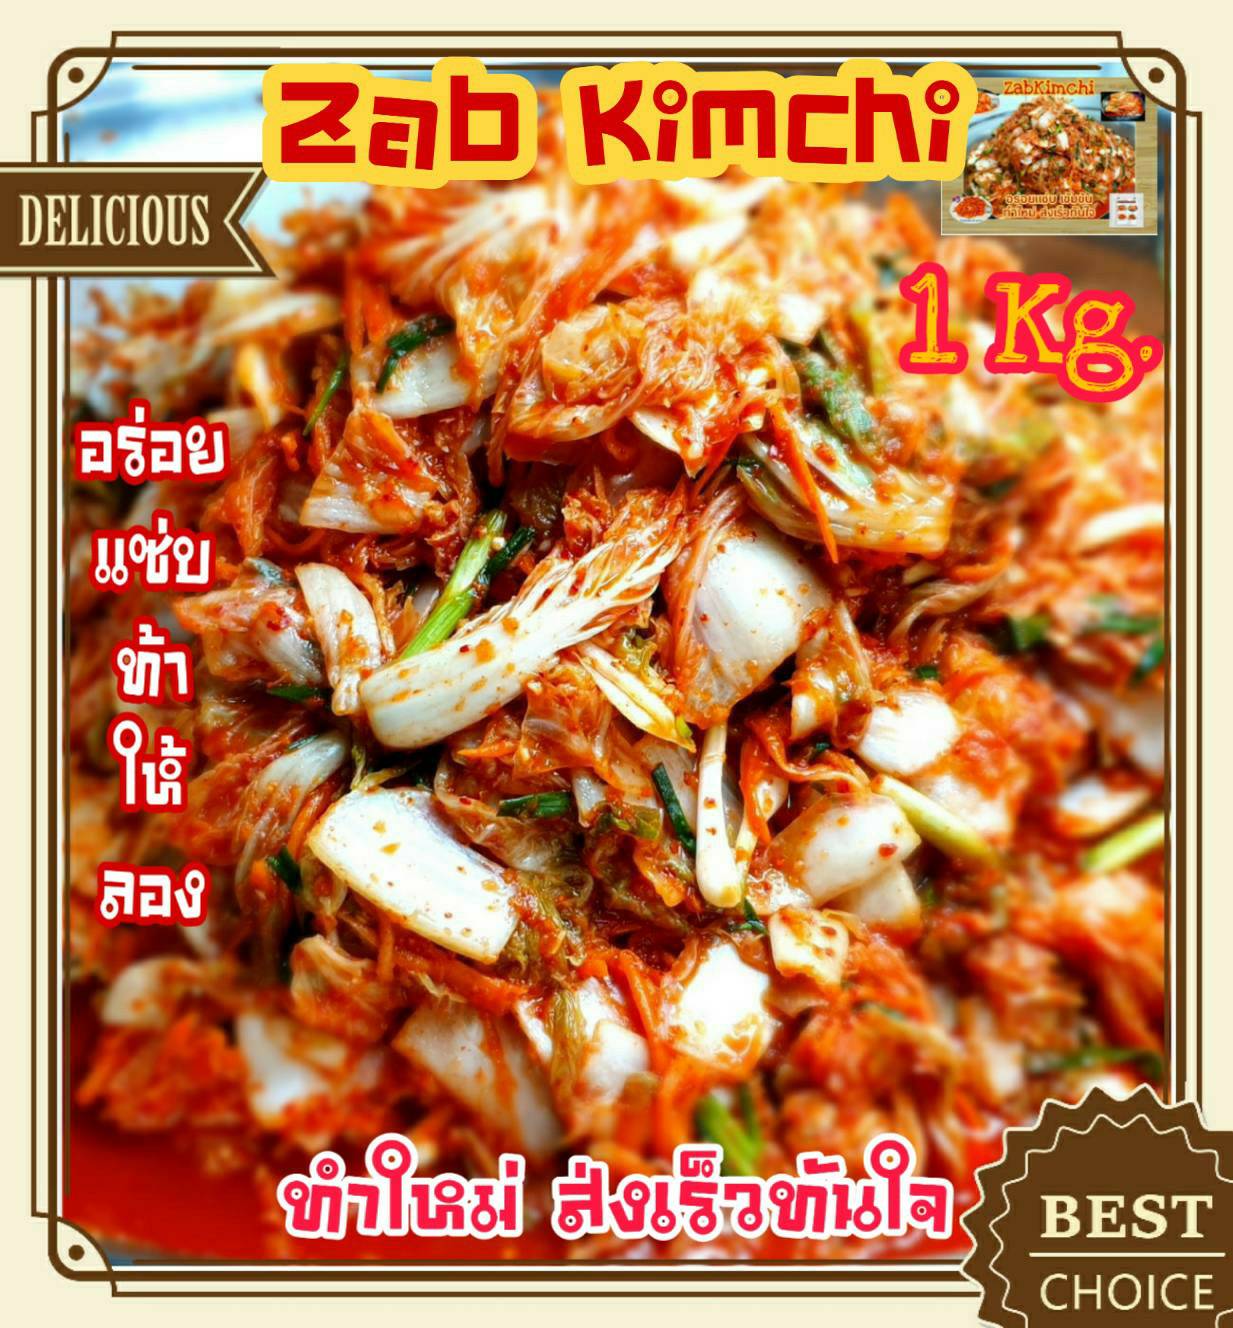 กิมจิ กิมจิผักกาดขาว 1 Kg. อร่อย แซ่บ ท้าให้ลอง Homemade Kimchi กิมจิเกาหลี กิมจิผักกาดขาว กิมจิเห็ด กิมจิโพกิ กิมจิต้นหอม กิมจิโฮมเมด